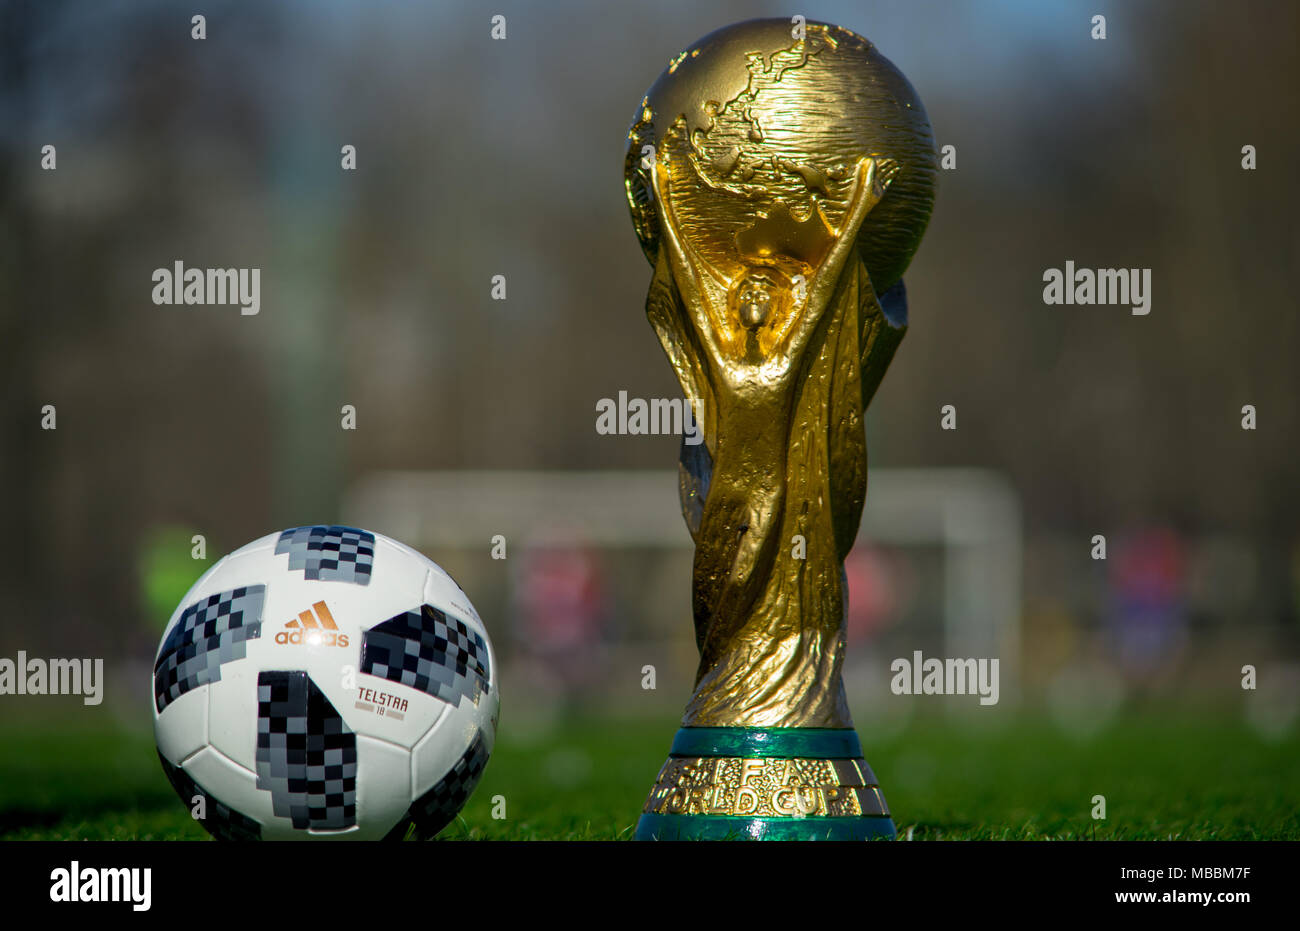 9 avril 2018 Moscou, Russie Trophée de la Coupe du Monde de la Fifa et  ballon officiel de la Coupe du Monde FIFA 2018 Adidas Telstar 18 sur  l'herbe verte du footbal